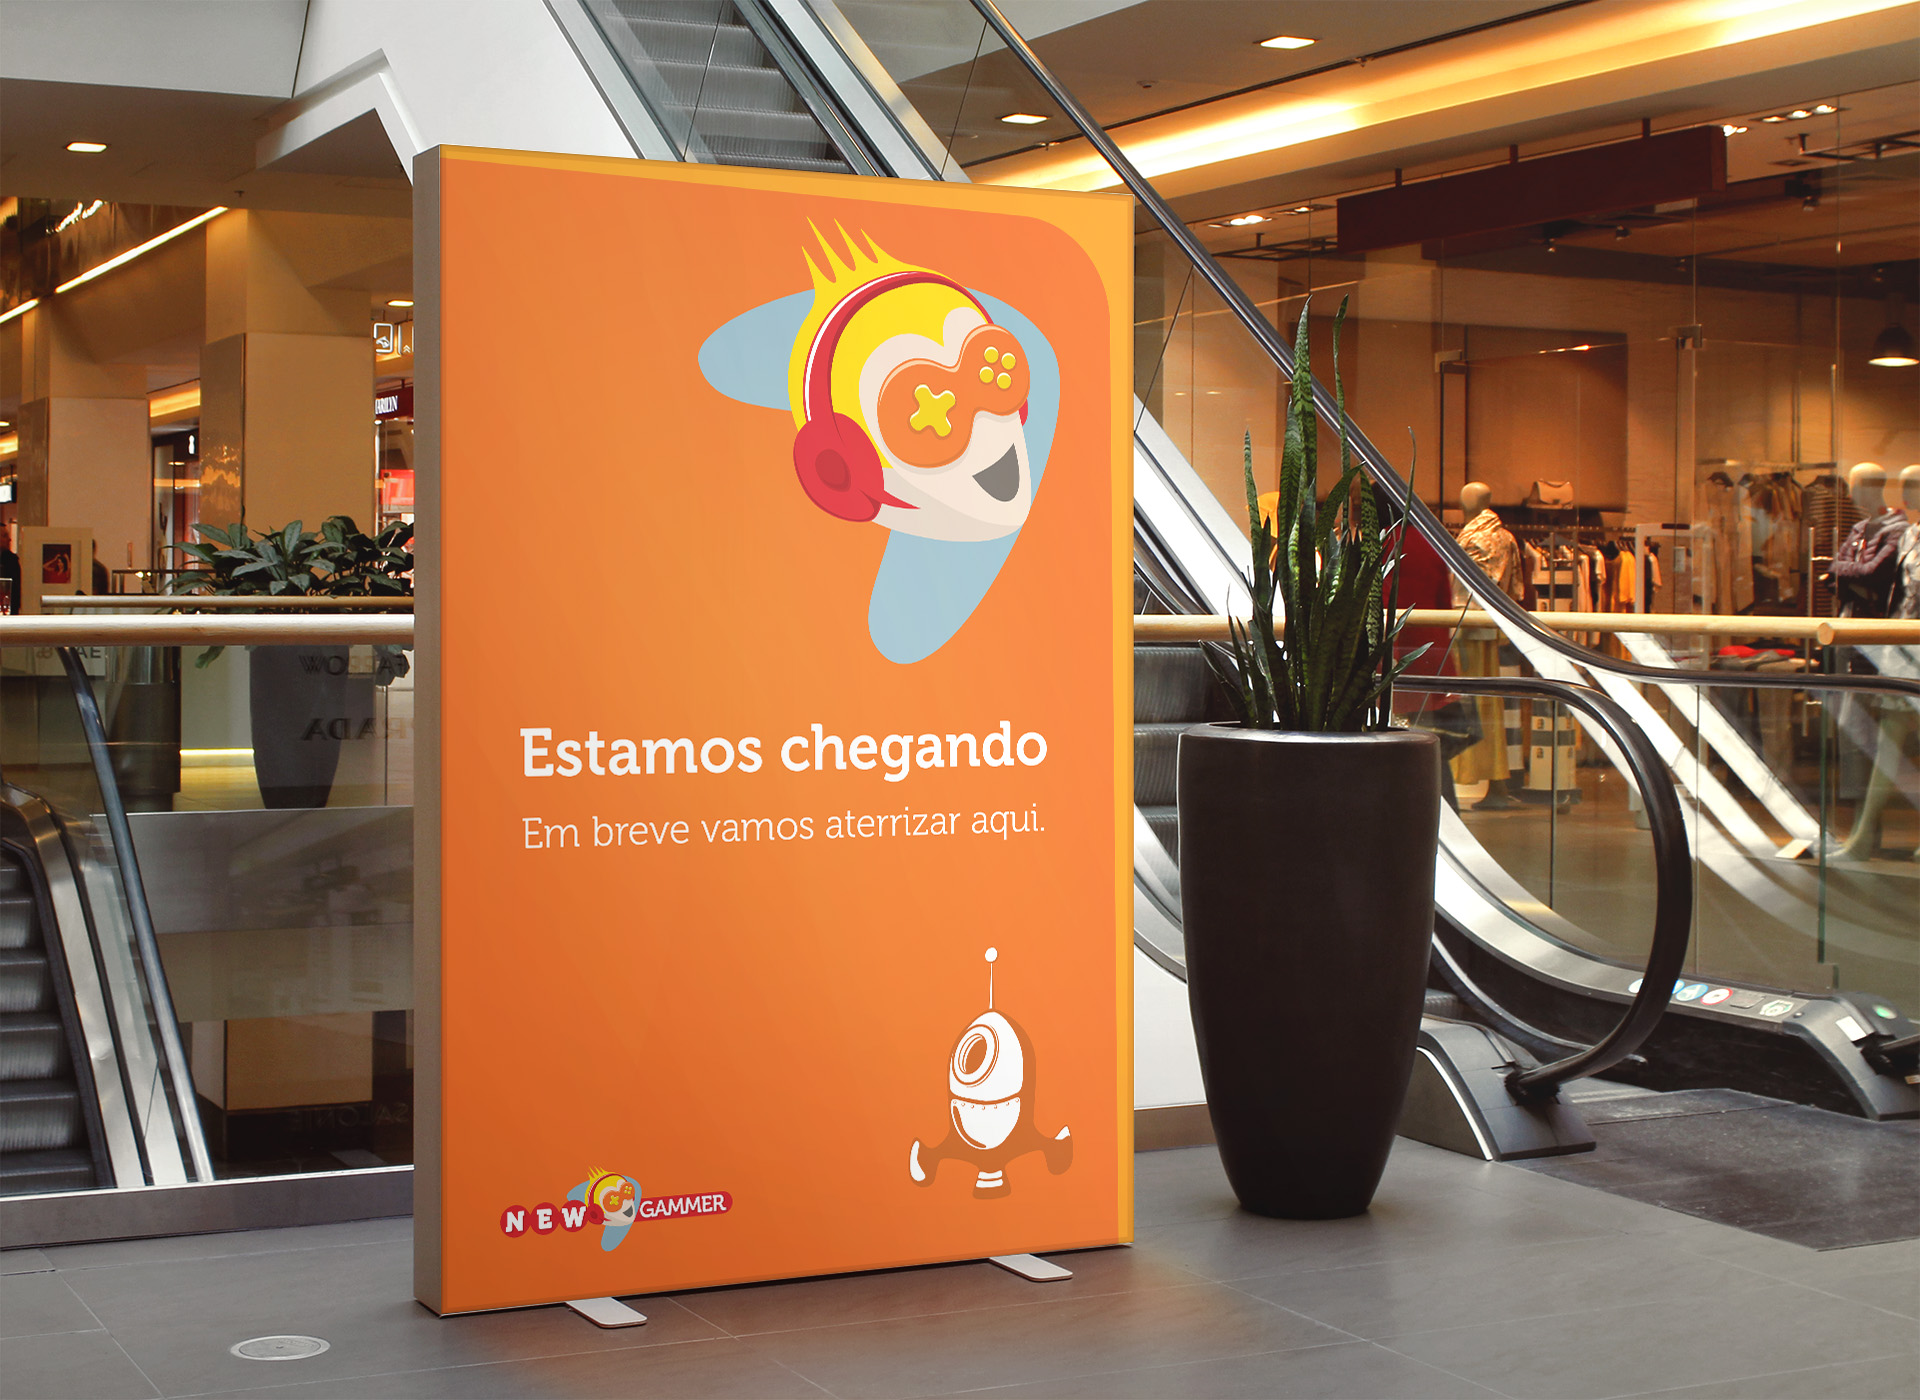 Imagem de totem de mall com a identidade visual NewGammer. Comunicação interna de shopping do lançamento da loja NewGammer.